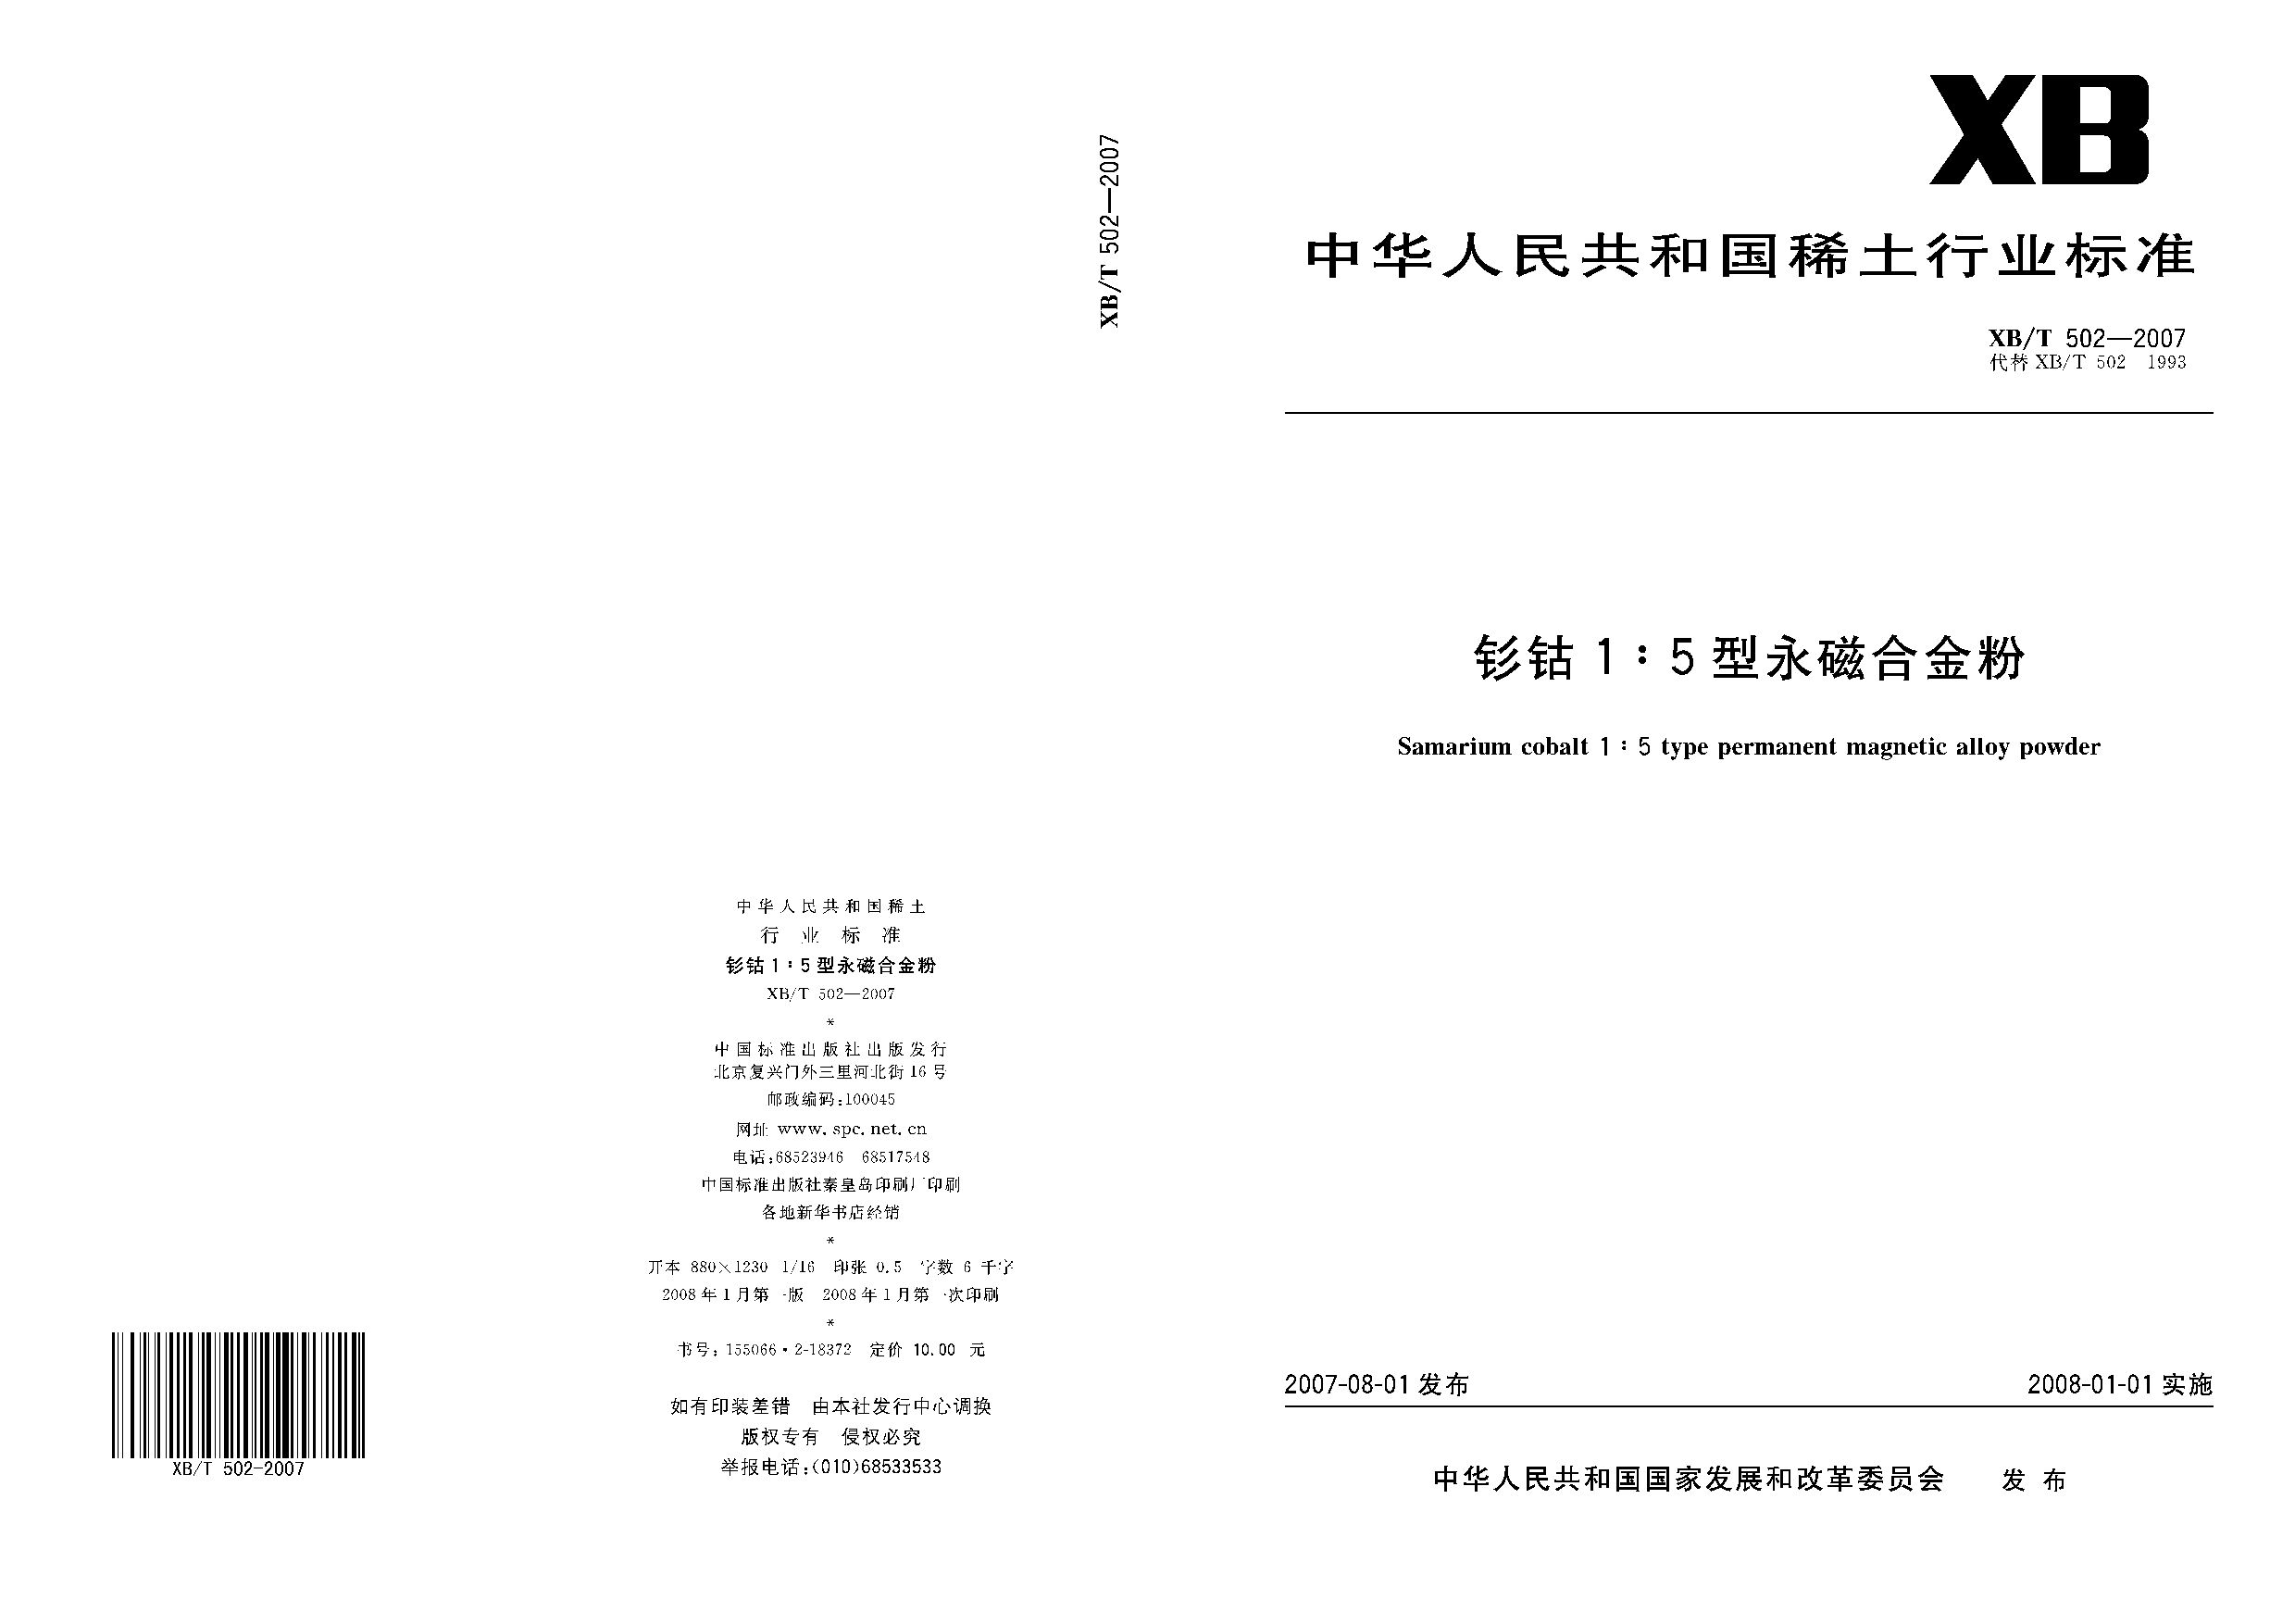 XB/T 502-2007封面图